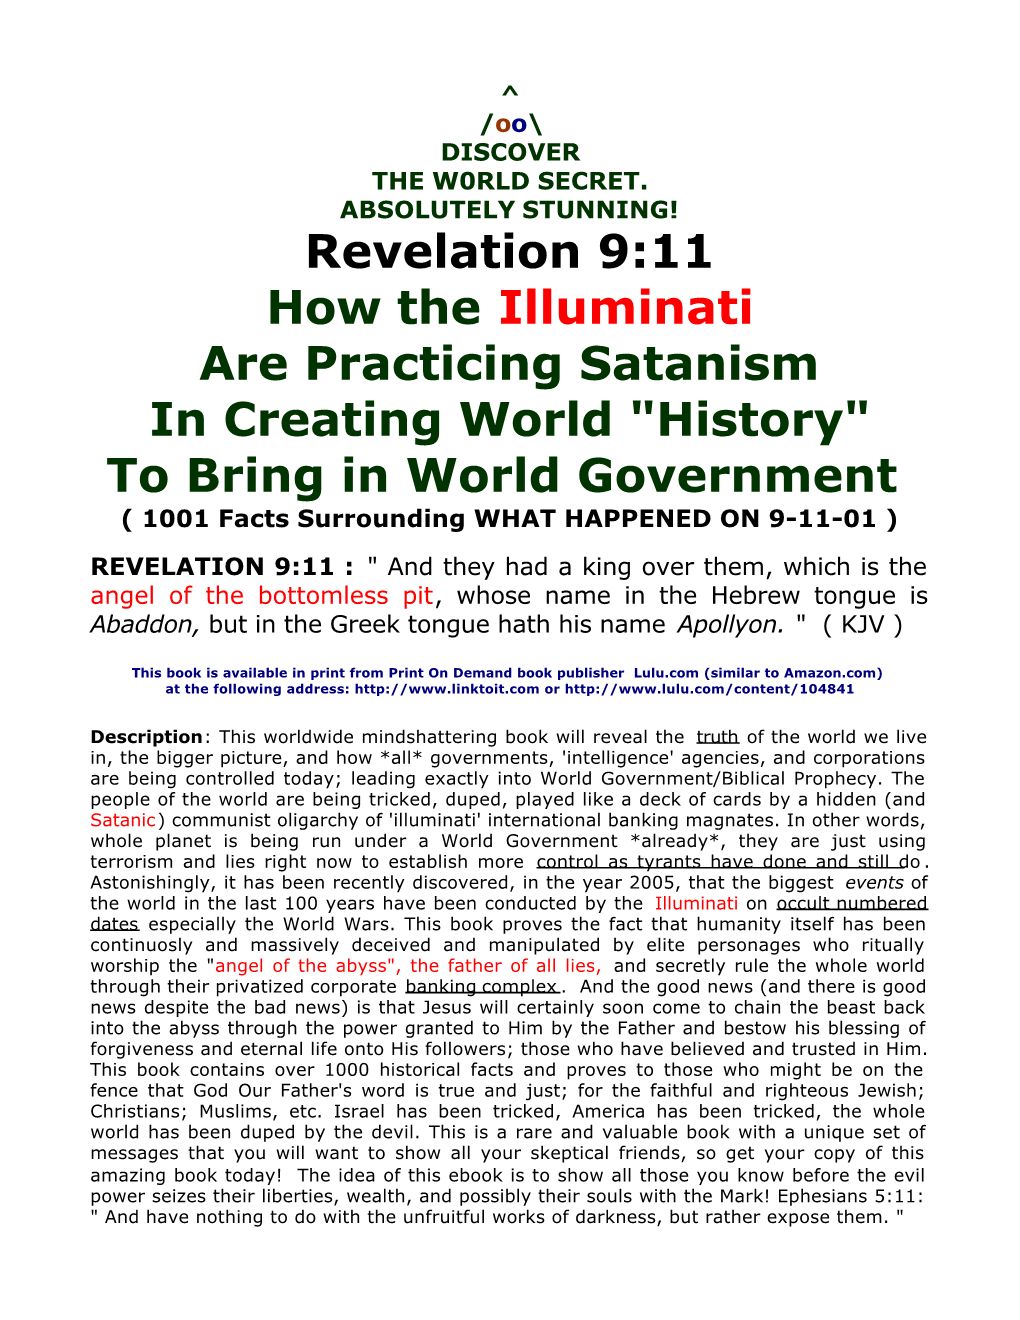 Revelation 9:11 How the Illuminati Are Practicing Satanism in Creating